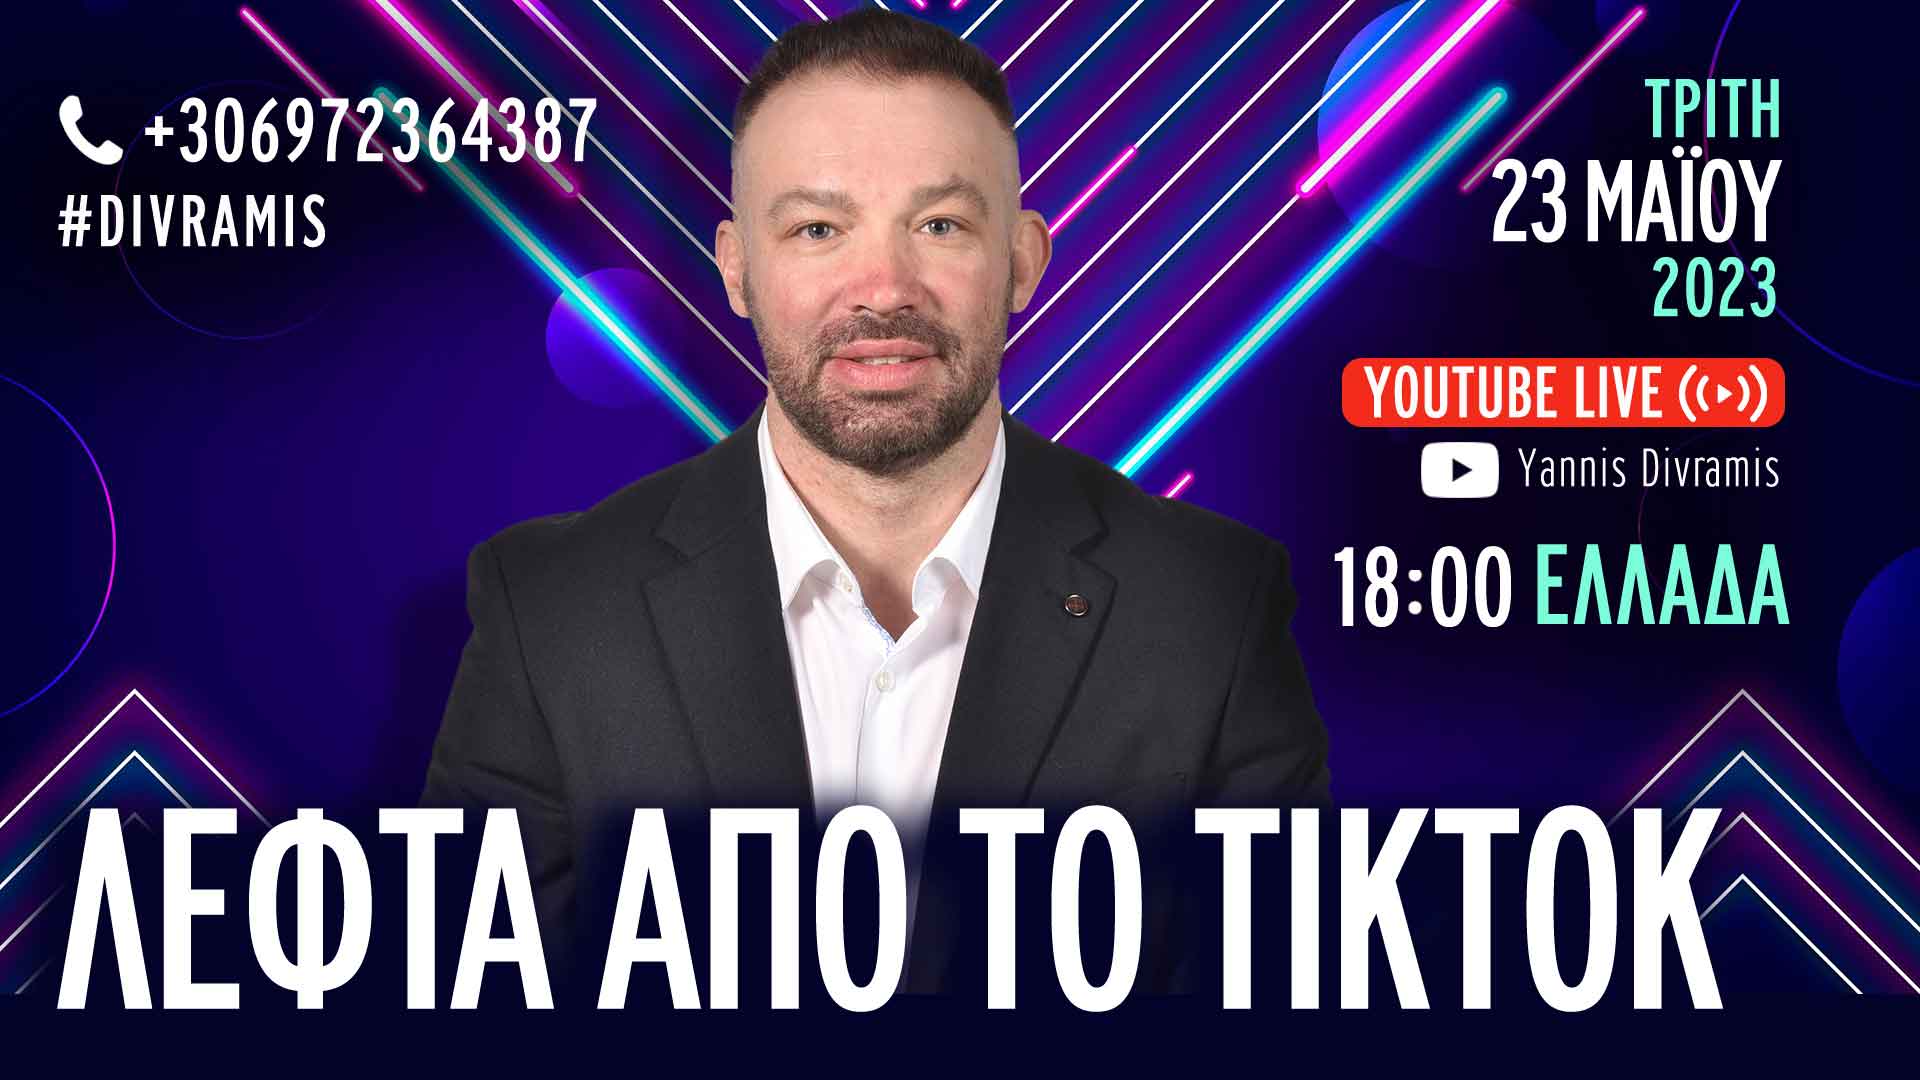 ΛΕΦΤΑ ΑΠΟ ΤΟ TIKTOK! LIVE 16.00 23-05-2023 #DIVRAMIS